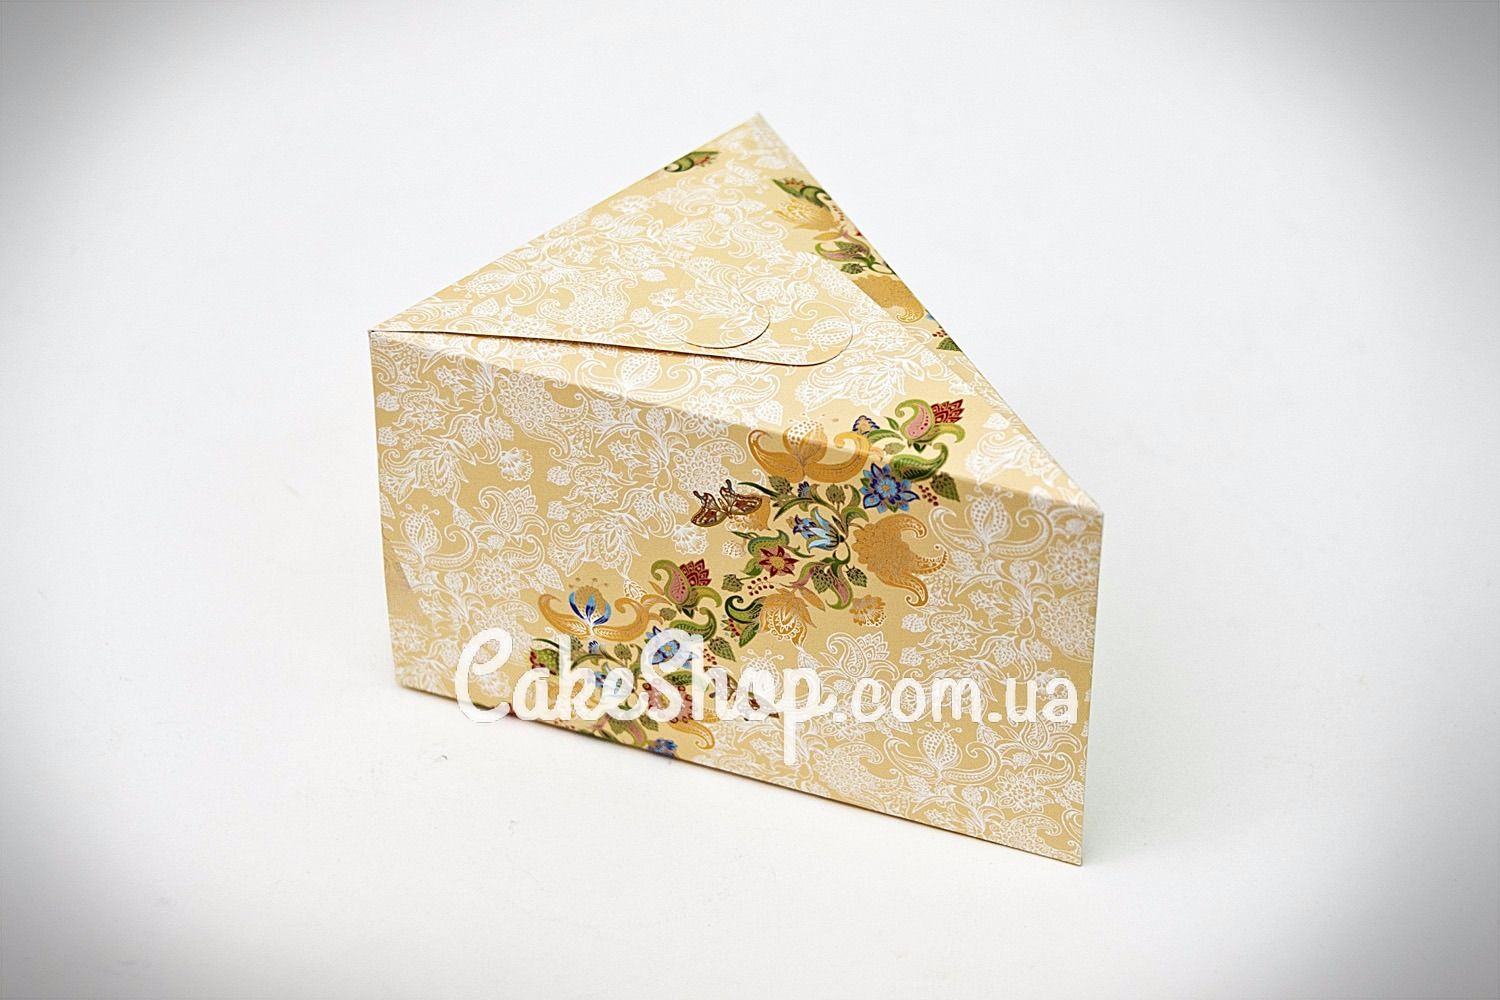 ⋗ Коробка для сладостей Орнамент купить в Украине ➛ CakeShop.com.ua, фото